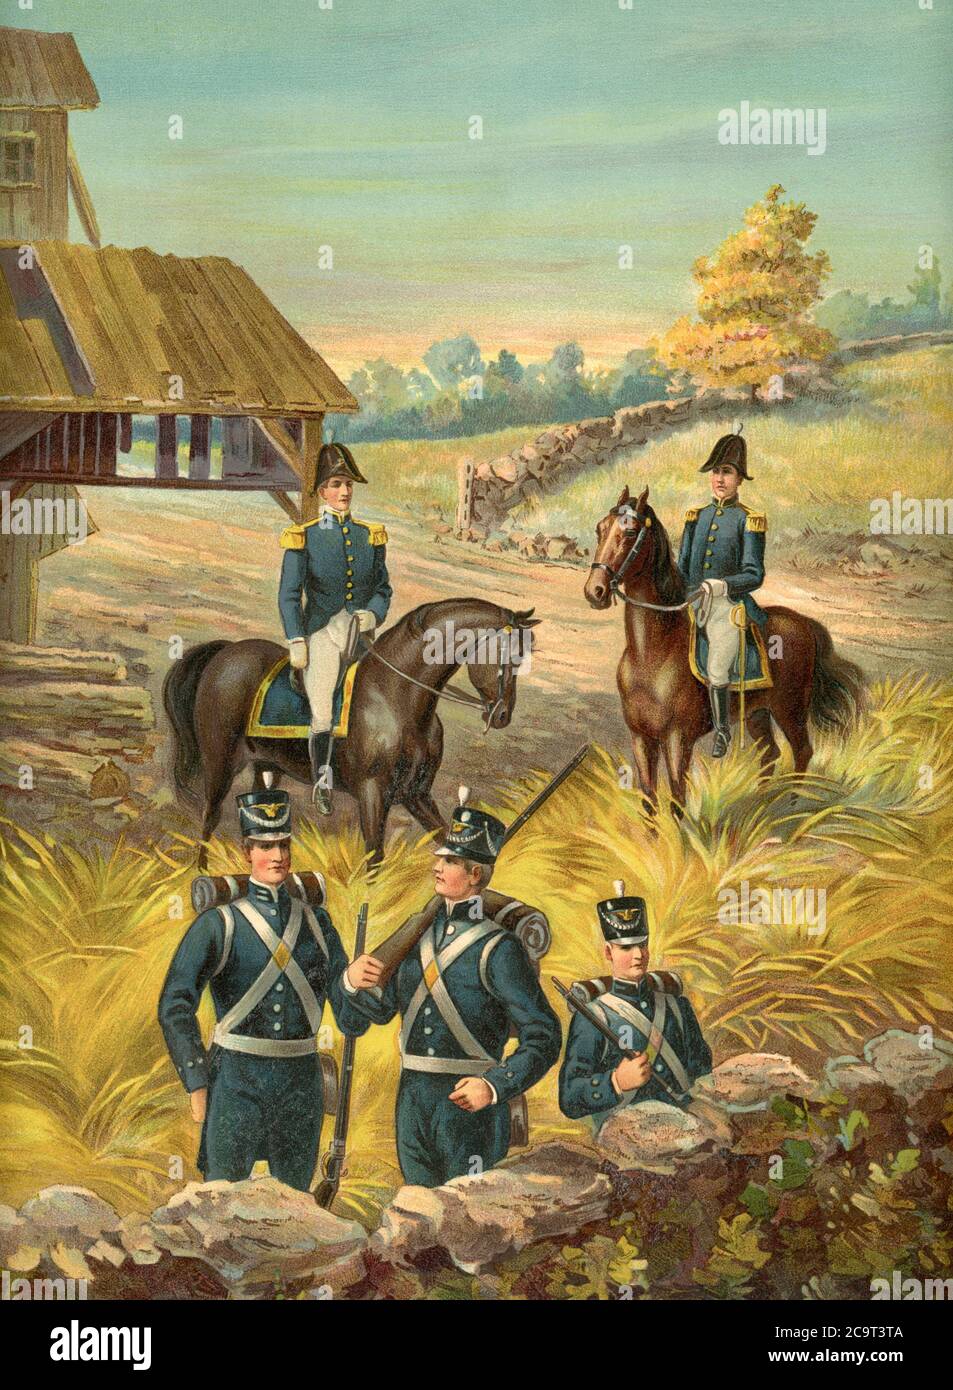 Les officiers généraux et d'infanterie de l'armée américaine en 1813-1821 sont représentés sur la photo. L'illustration date de 1899. Banque D'Images